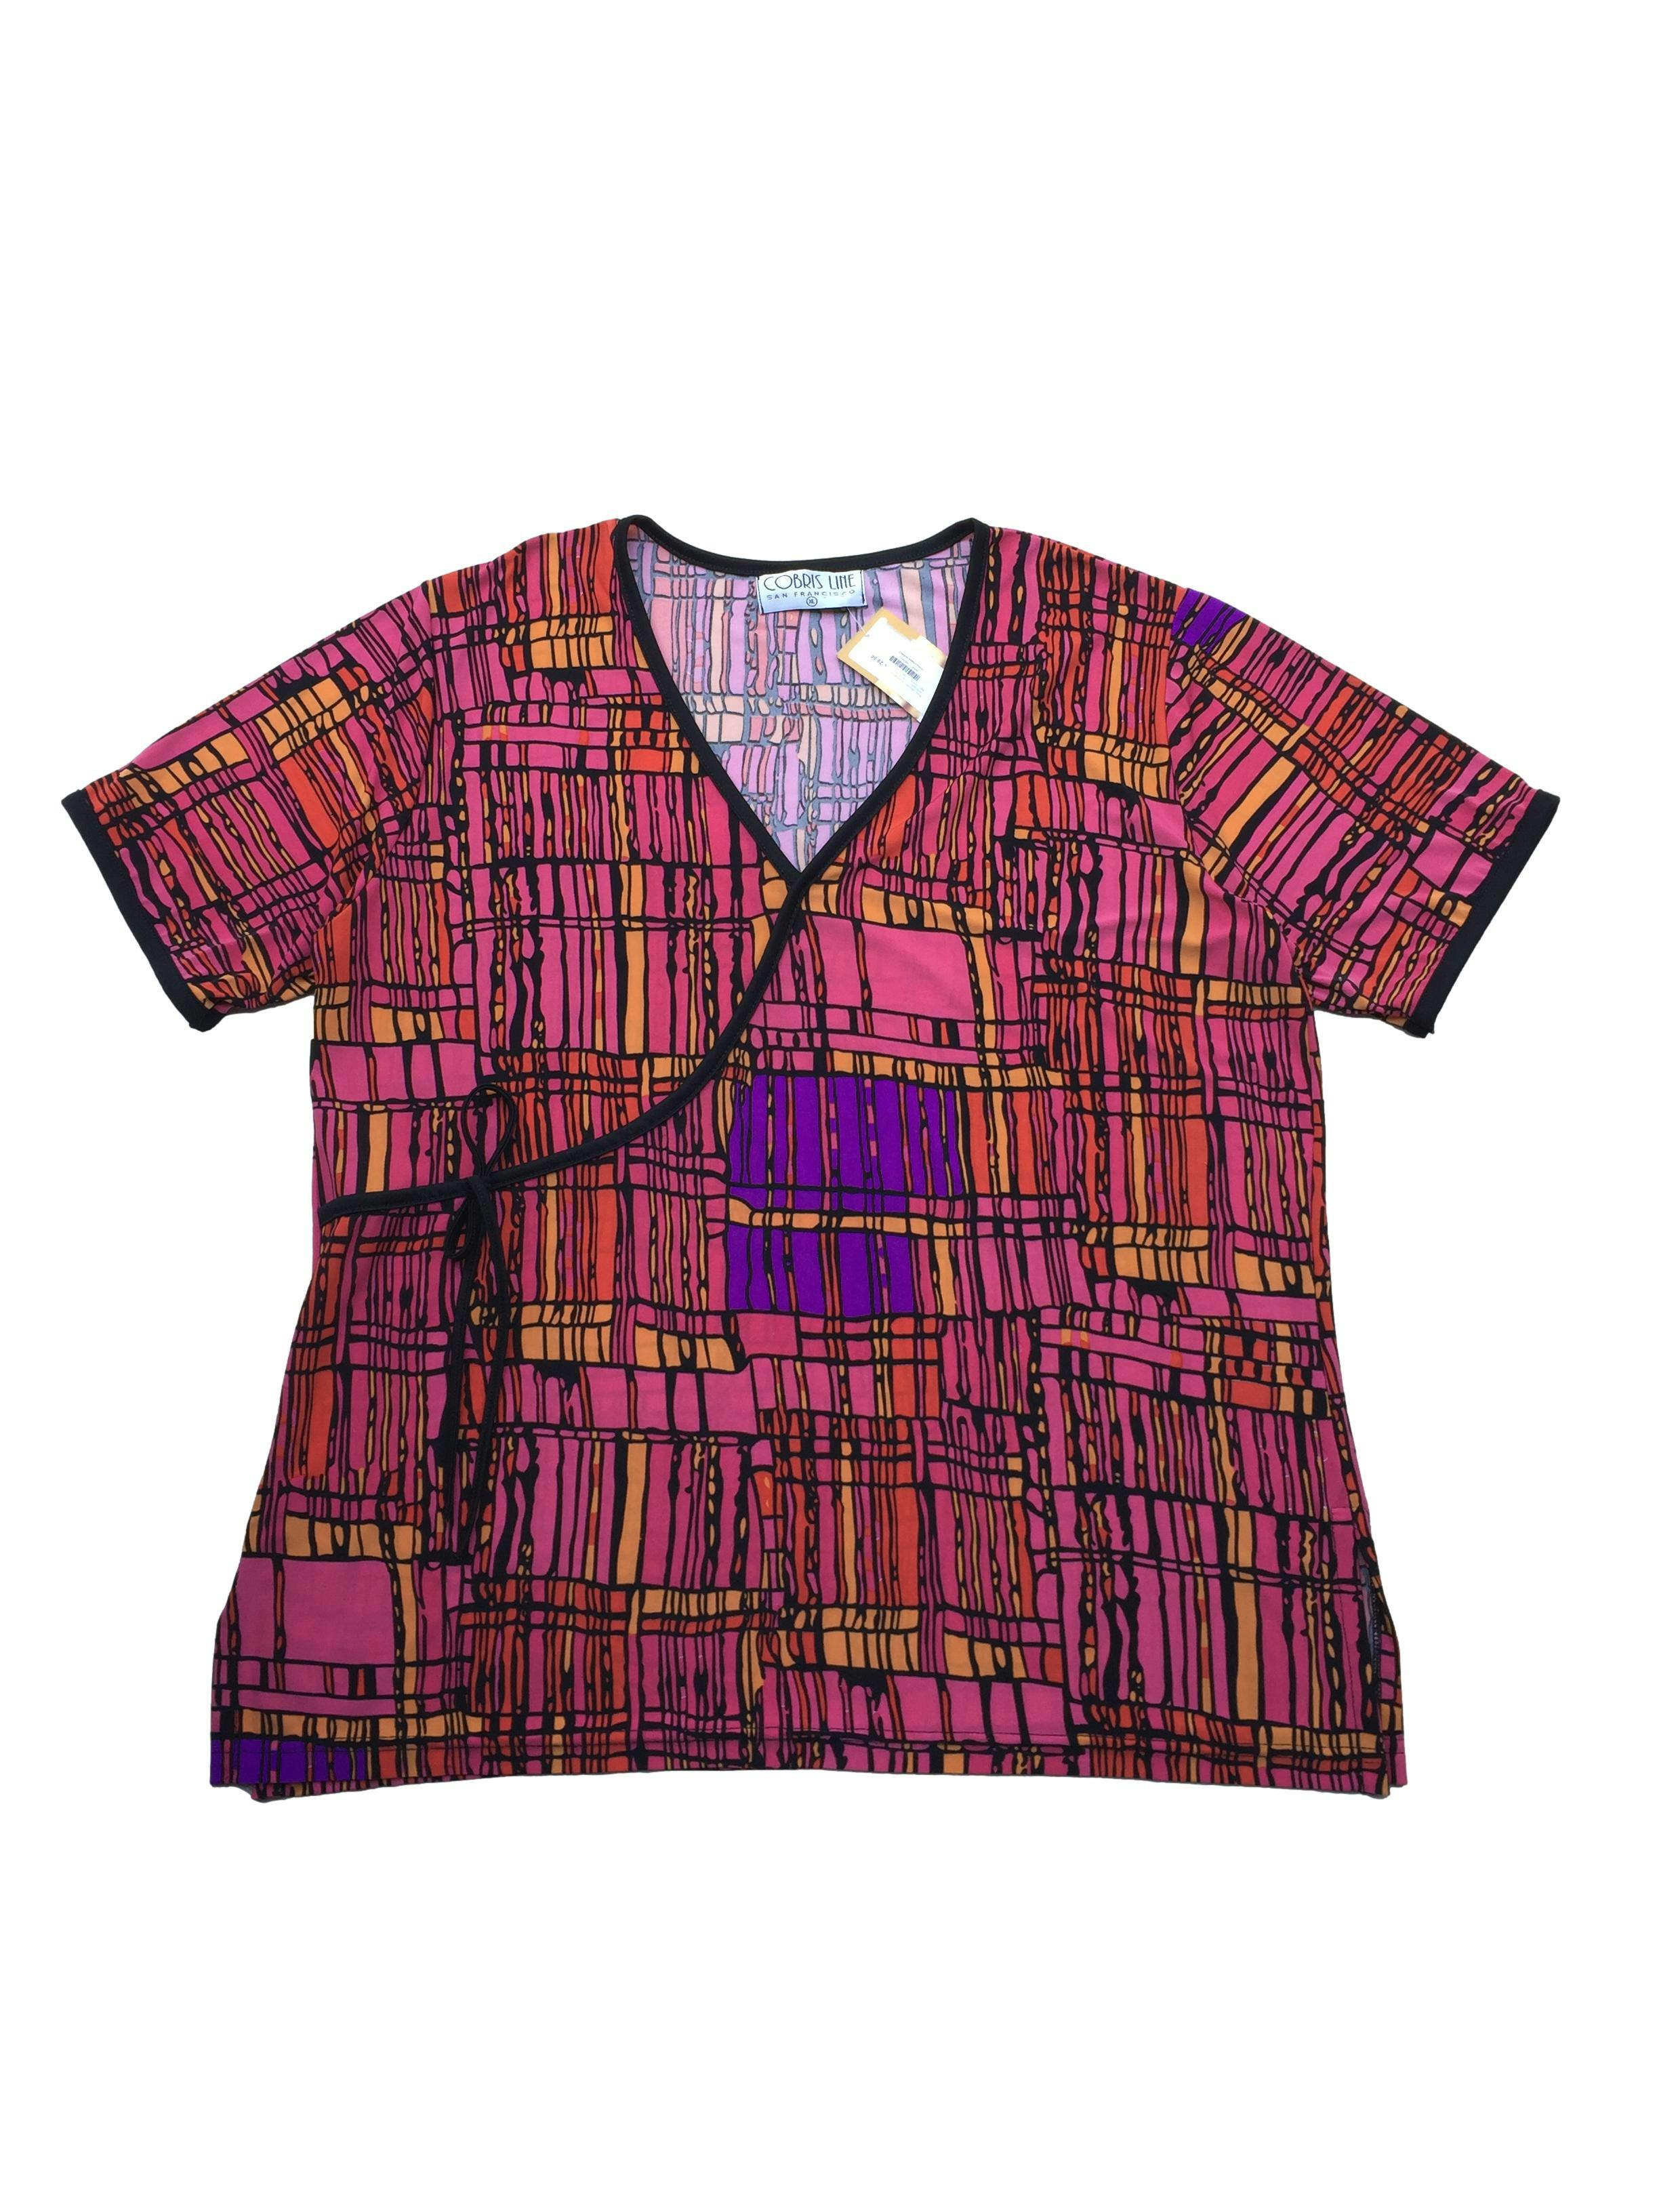 Blusa Cobris Line, estampado de rectángulos en colores rosa, negro, naranja, morado. Busto: 122cm, Largo: 72cm